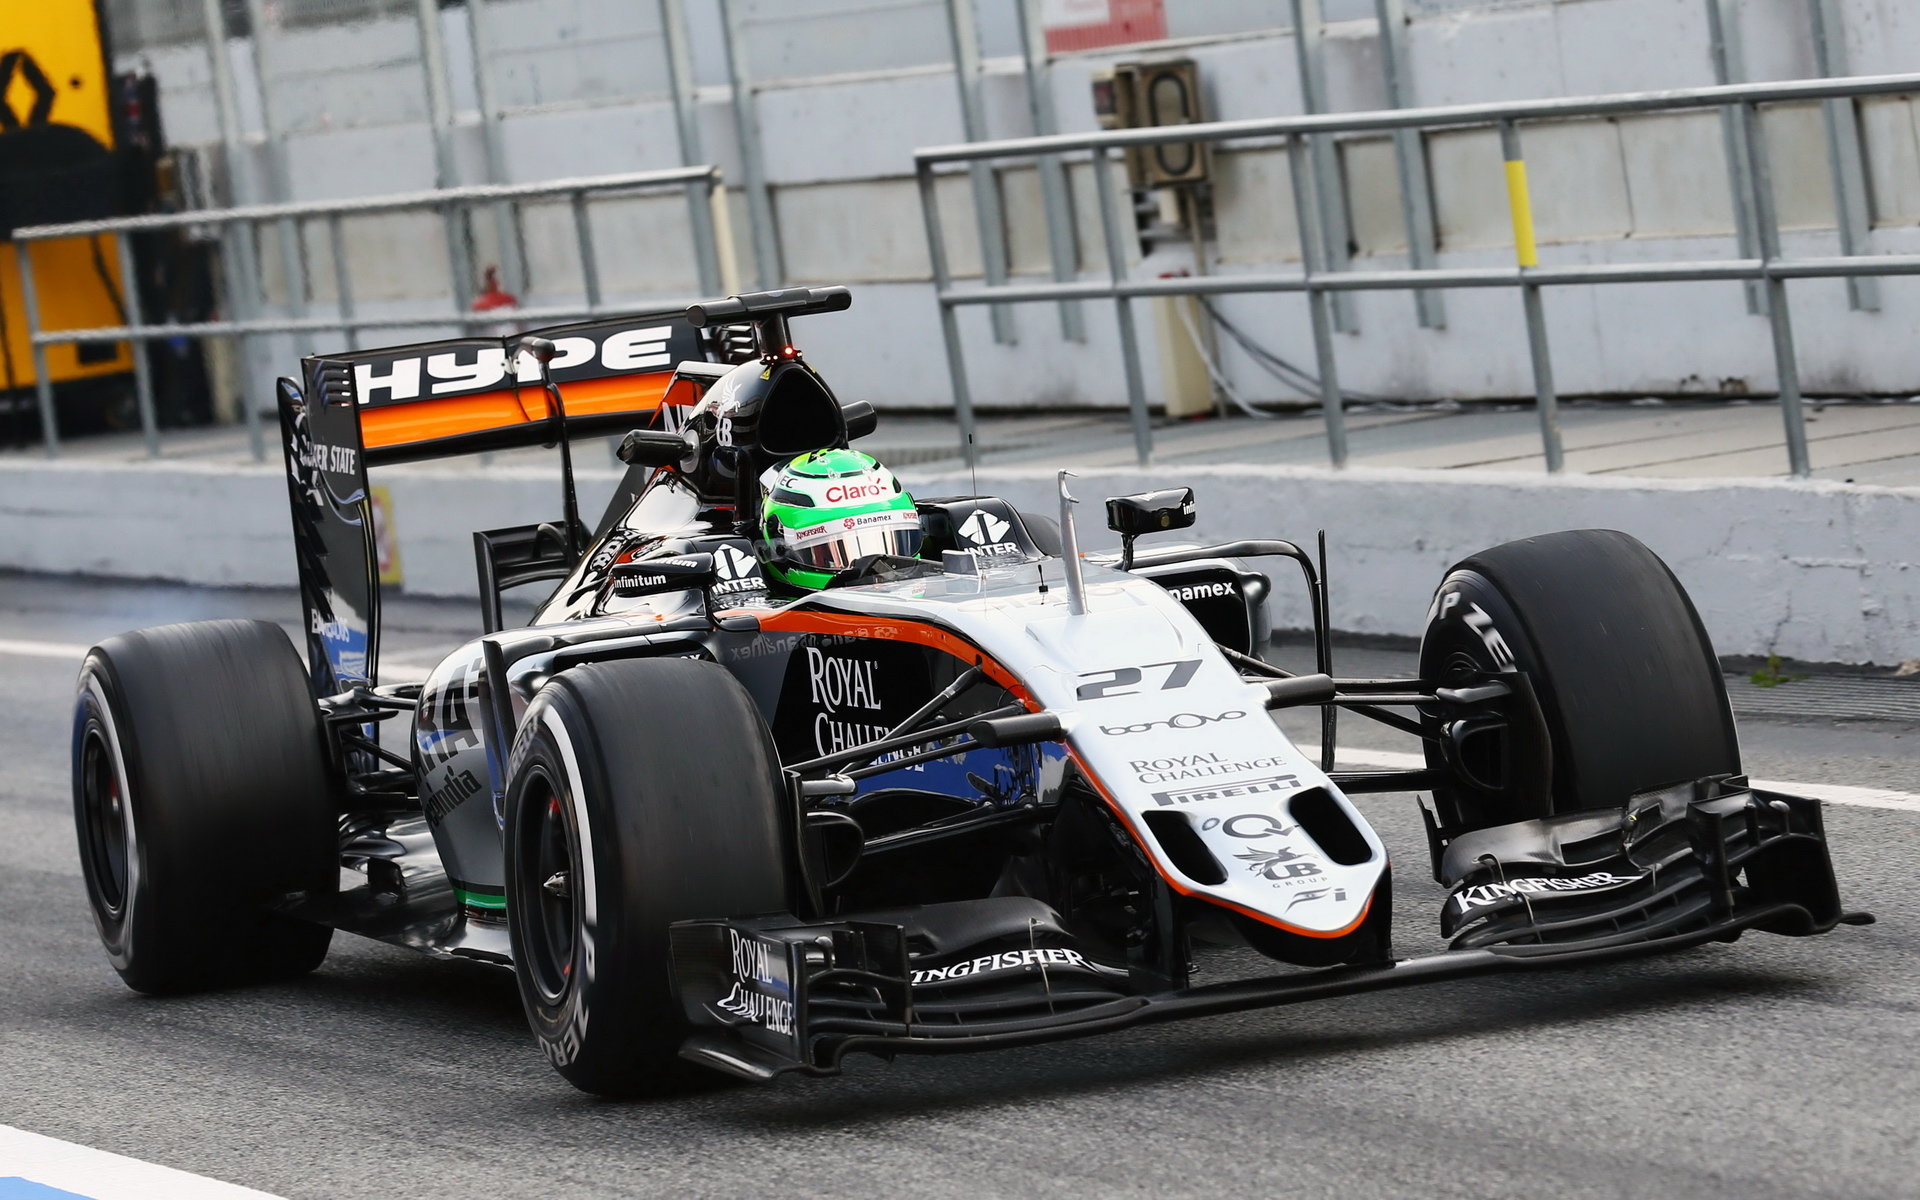 Nico Hülkenberg s vozem Force India VJM09 - Mercedes, třetí den testů v Barceloně